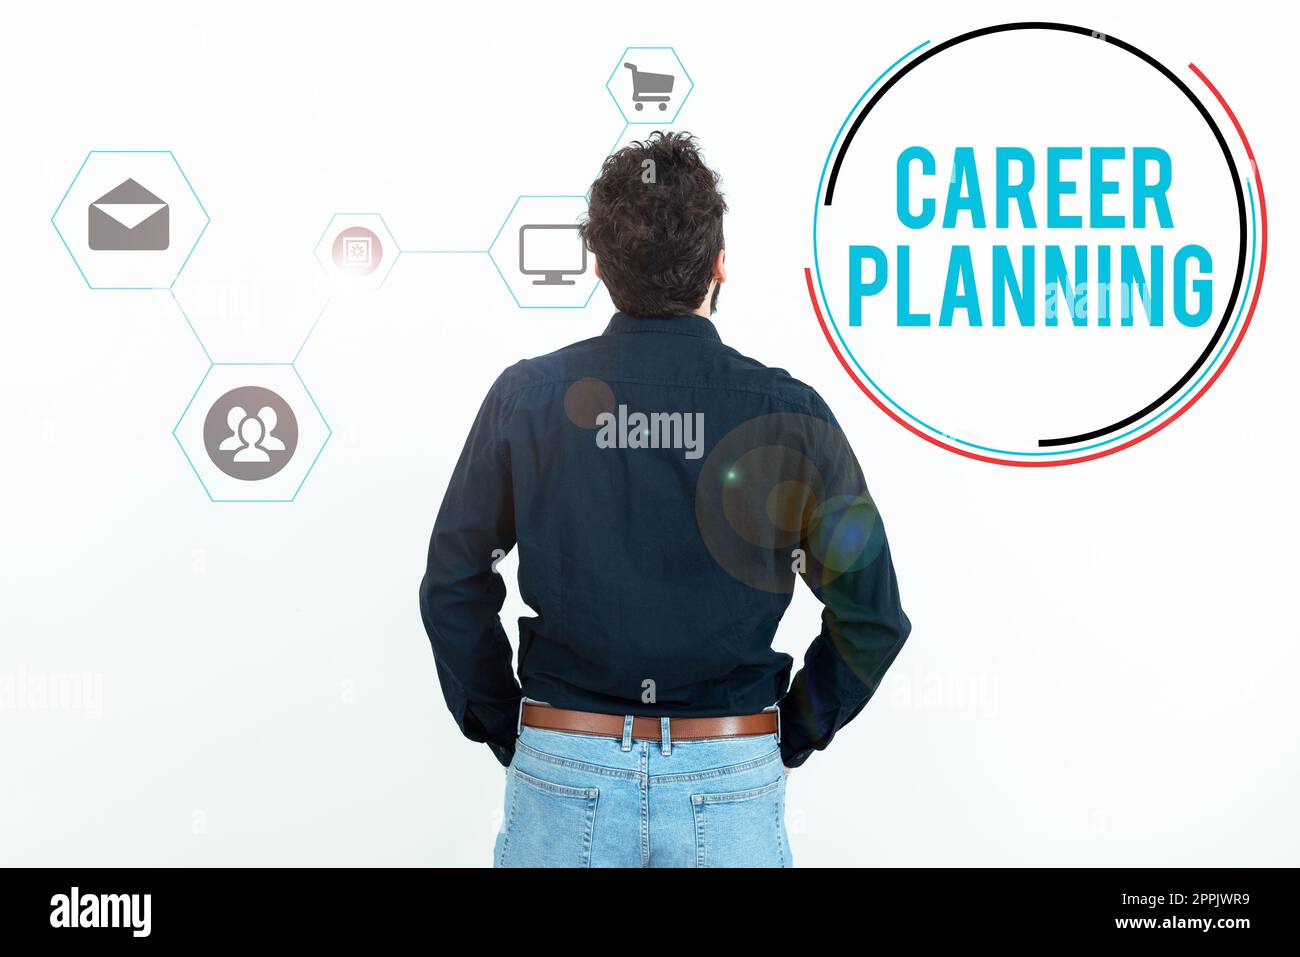 Affiche textuelle indiquant la planification de carrière. Mot pour Une liste d'objectifs et les actions que vous pouvez prendre pour les atteindre Banque D'Images